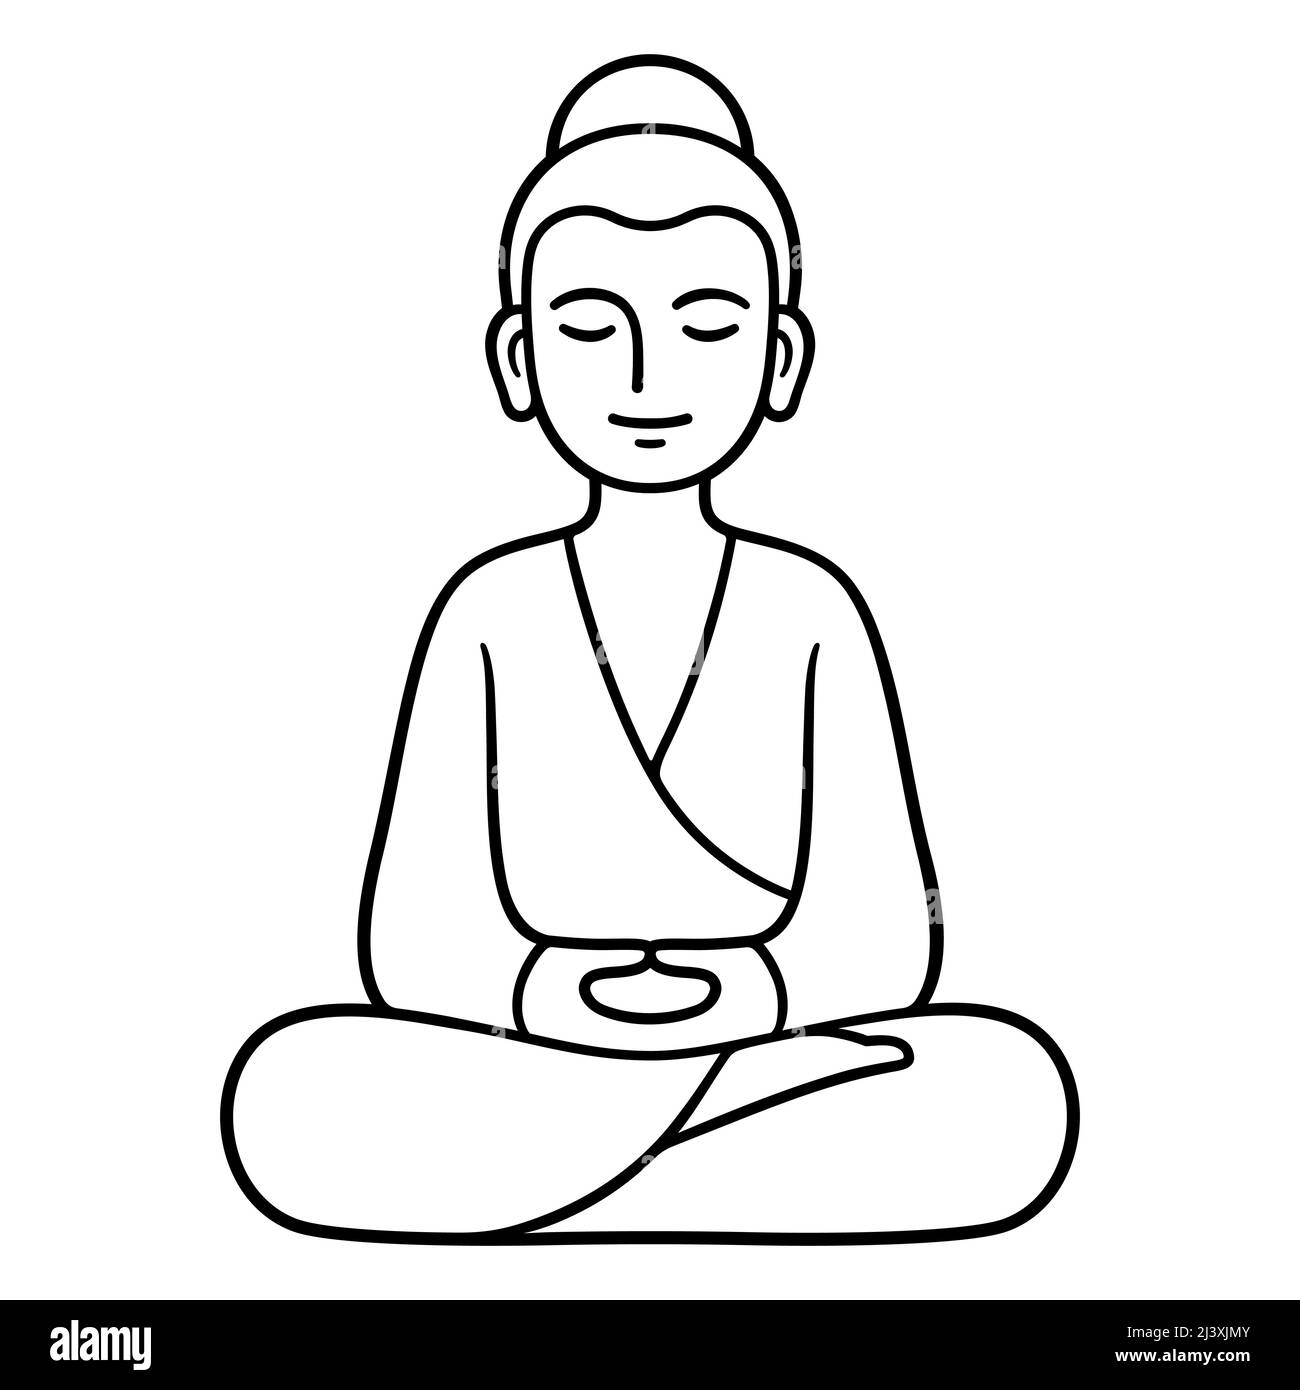 Statue de Bouddha simple et minimale assise dans la méditation, tradition bouddhiste Zen. Dessin au trait noir et blanc, illustration vectorielle isolée. Illustration de Vecteur